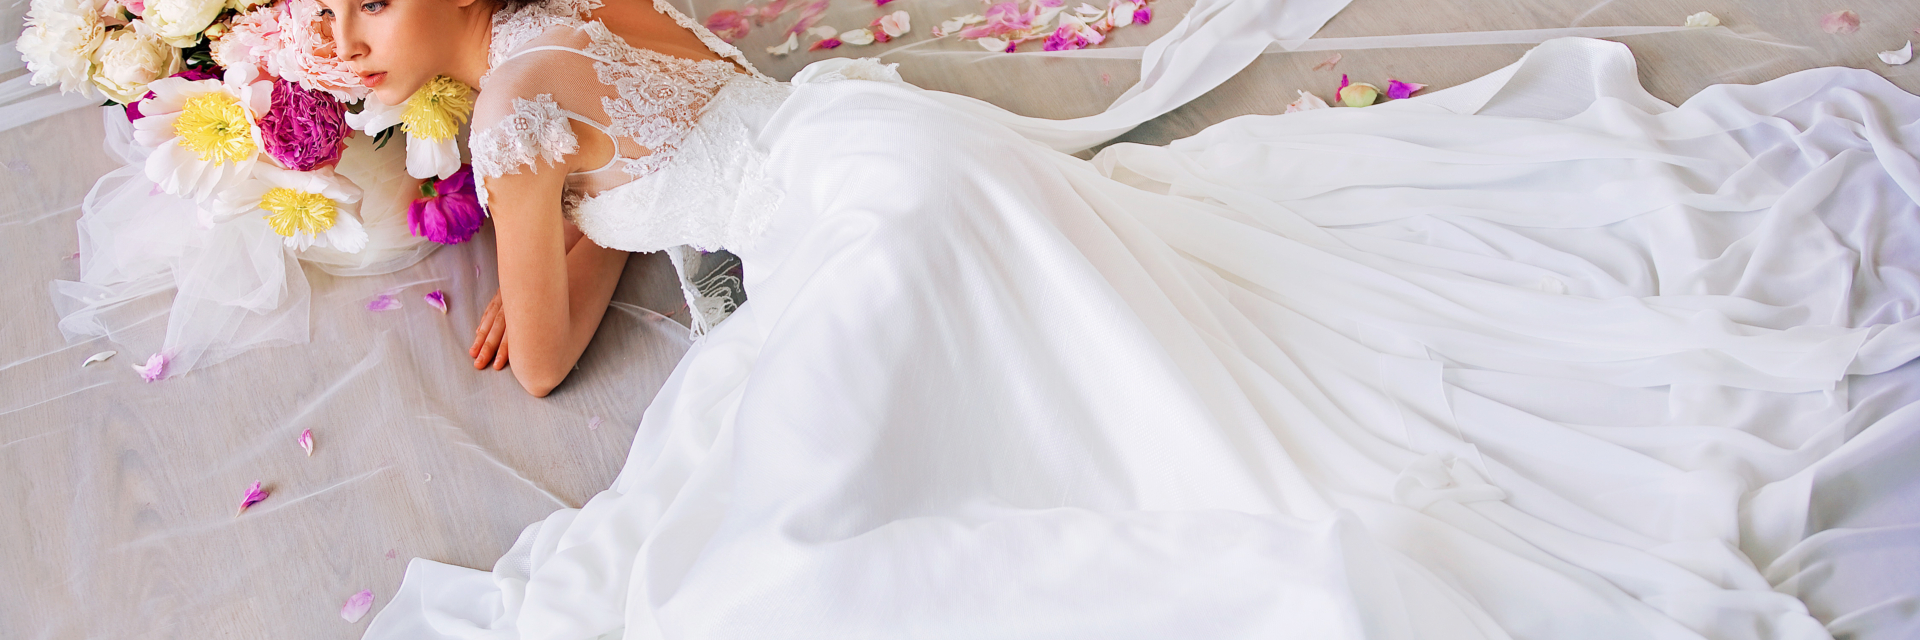 К чему снится свадебное платье на себе замужней девушке без прически